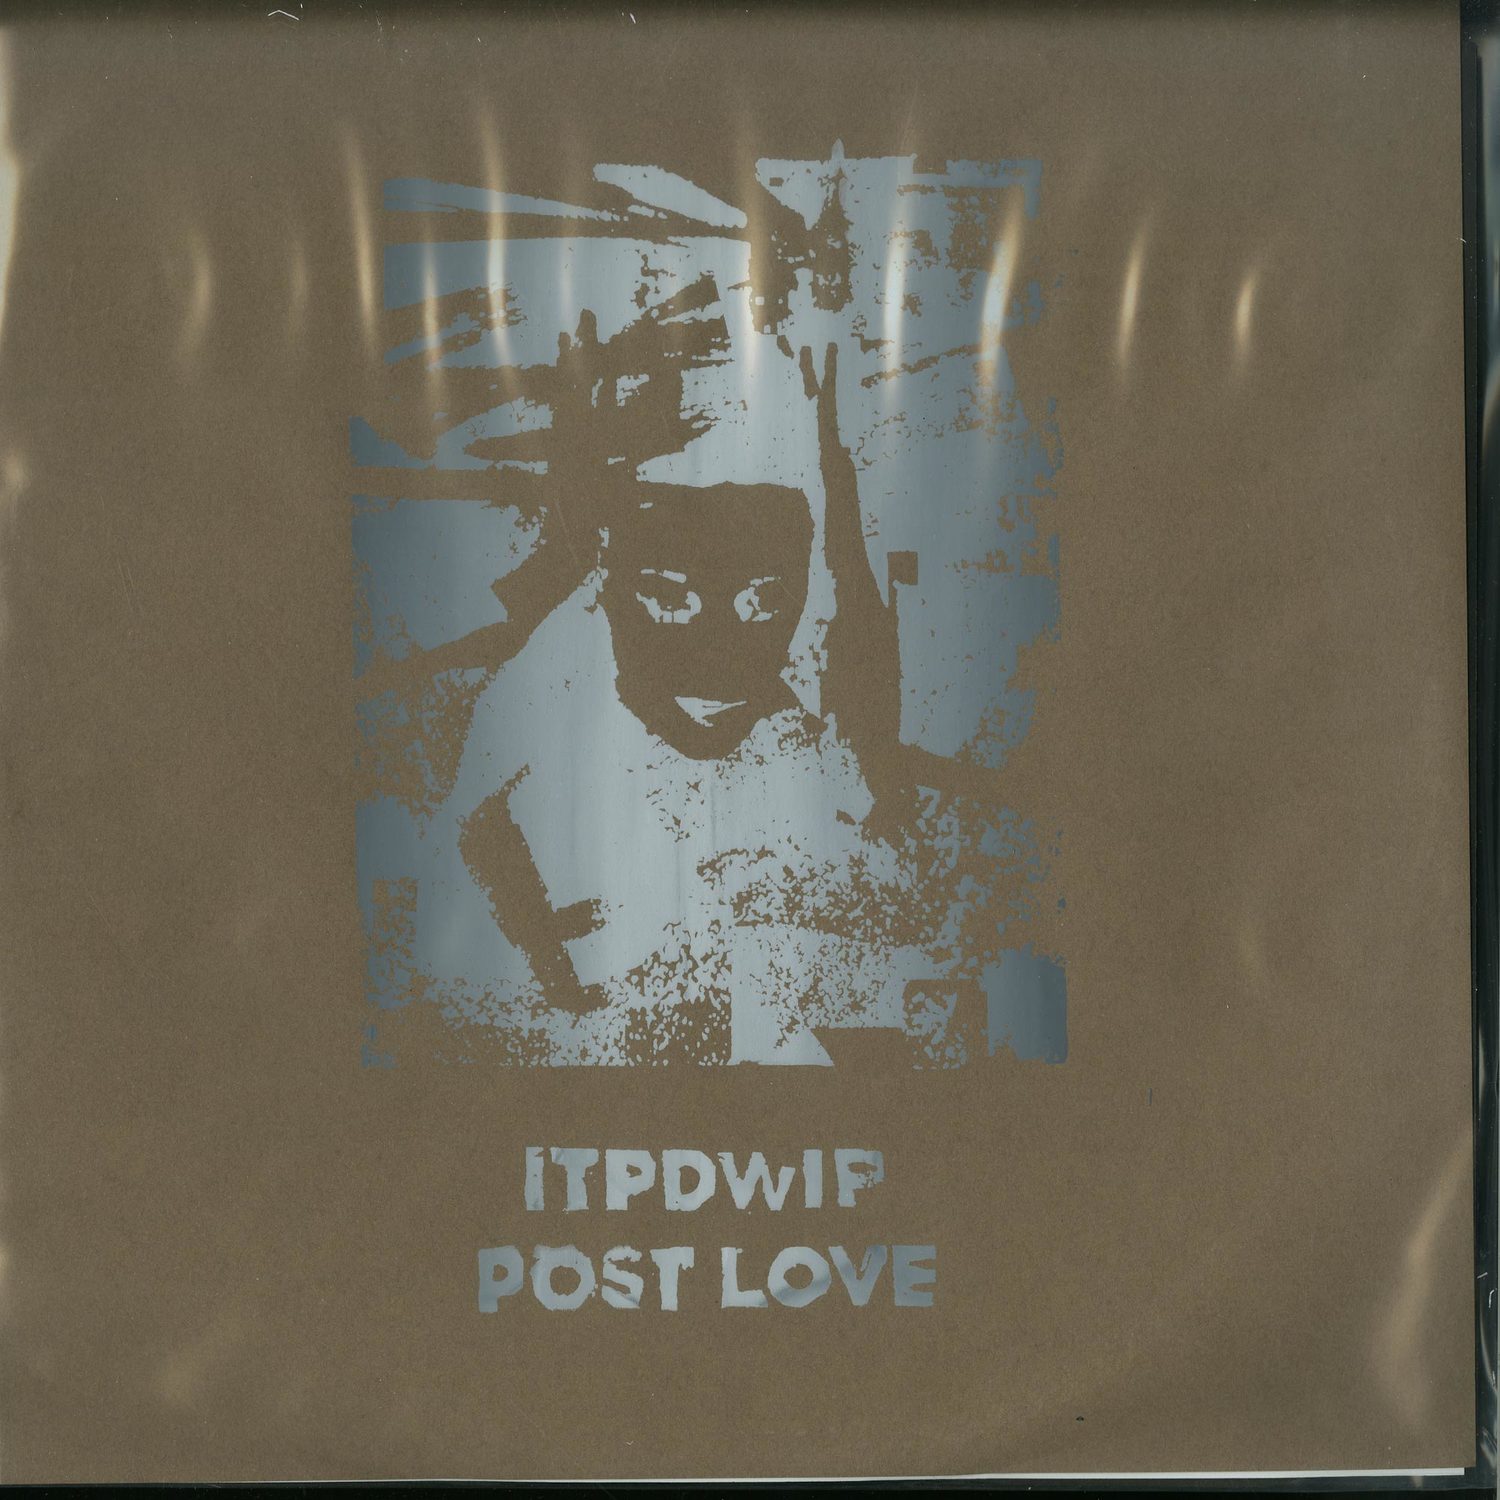 ITPDWIP - POST LOVE